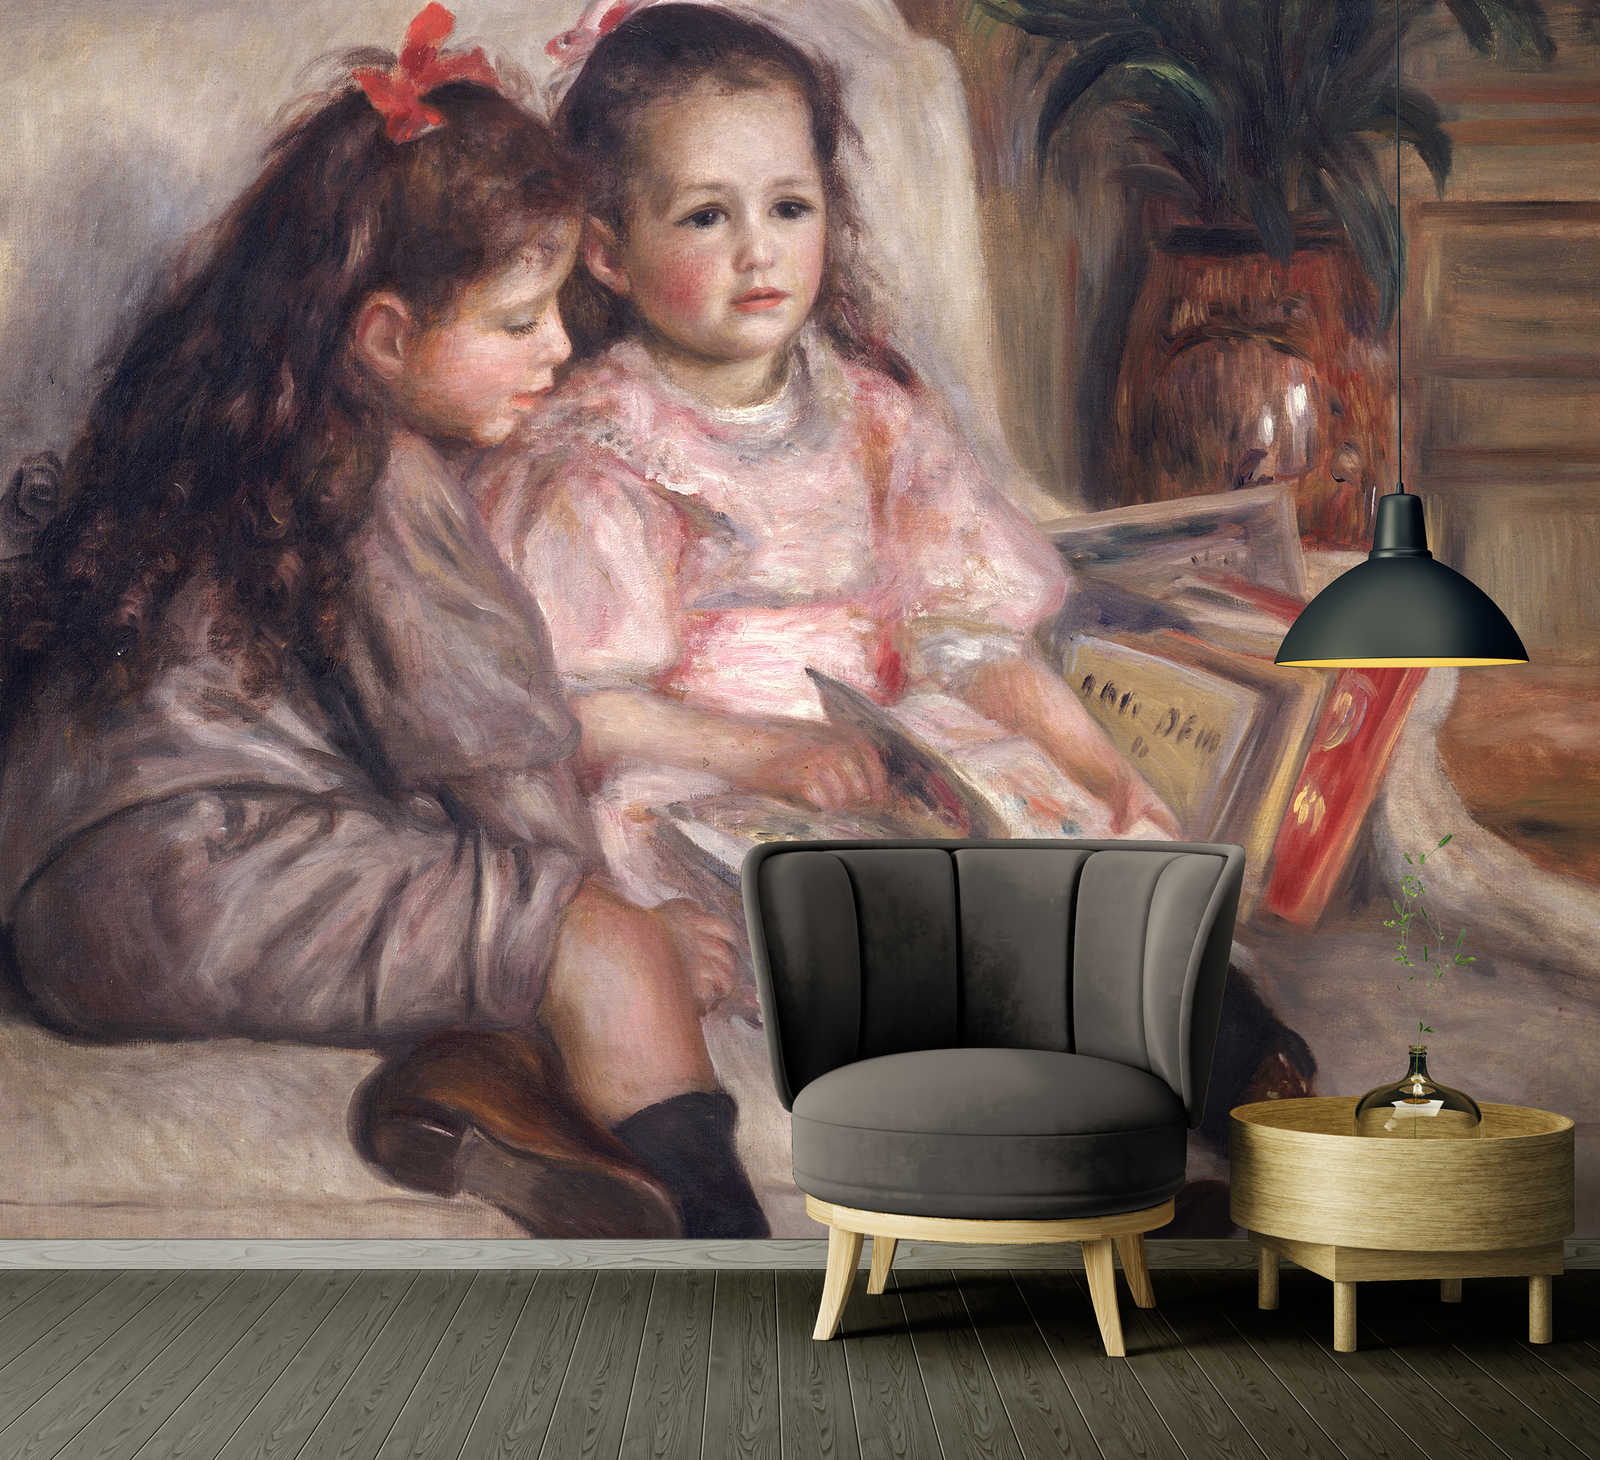             Mural de Pierre Auguste Renoir "Retratos de niños"
        